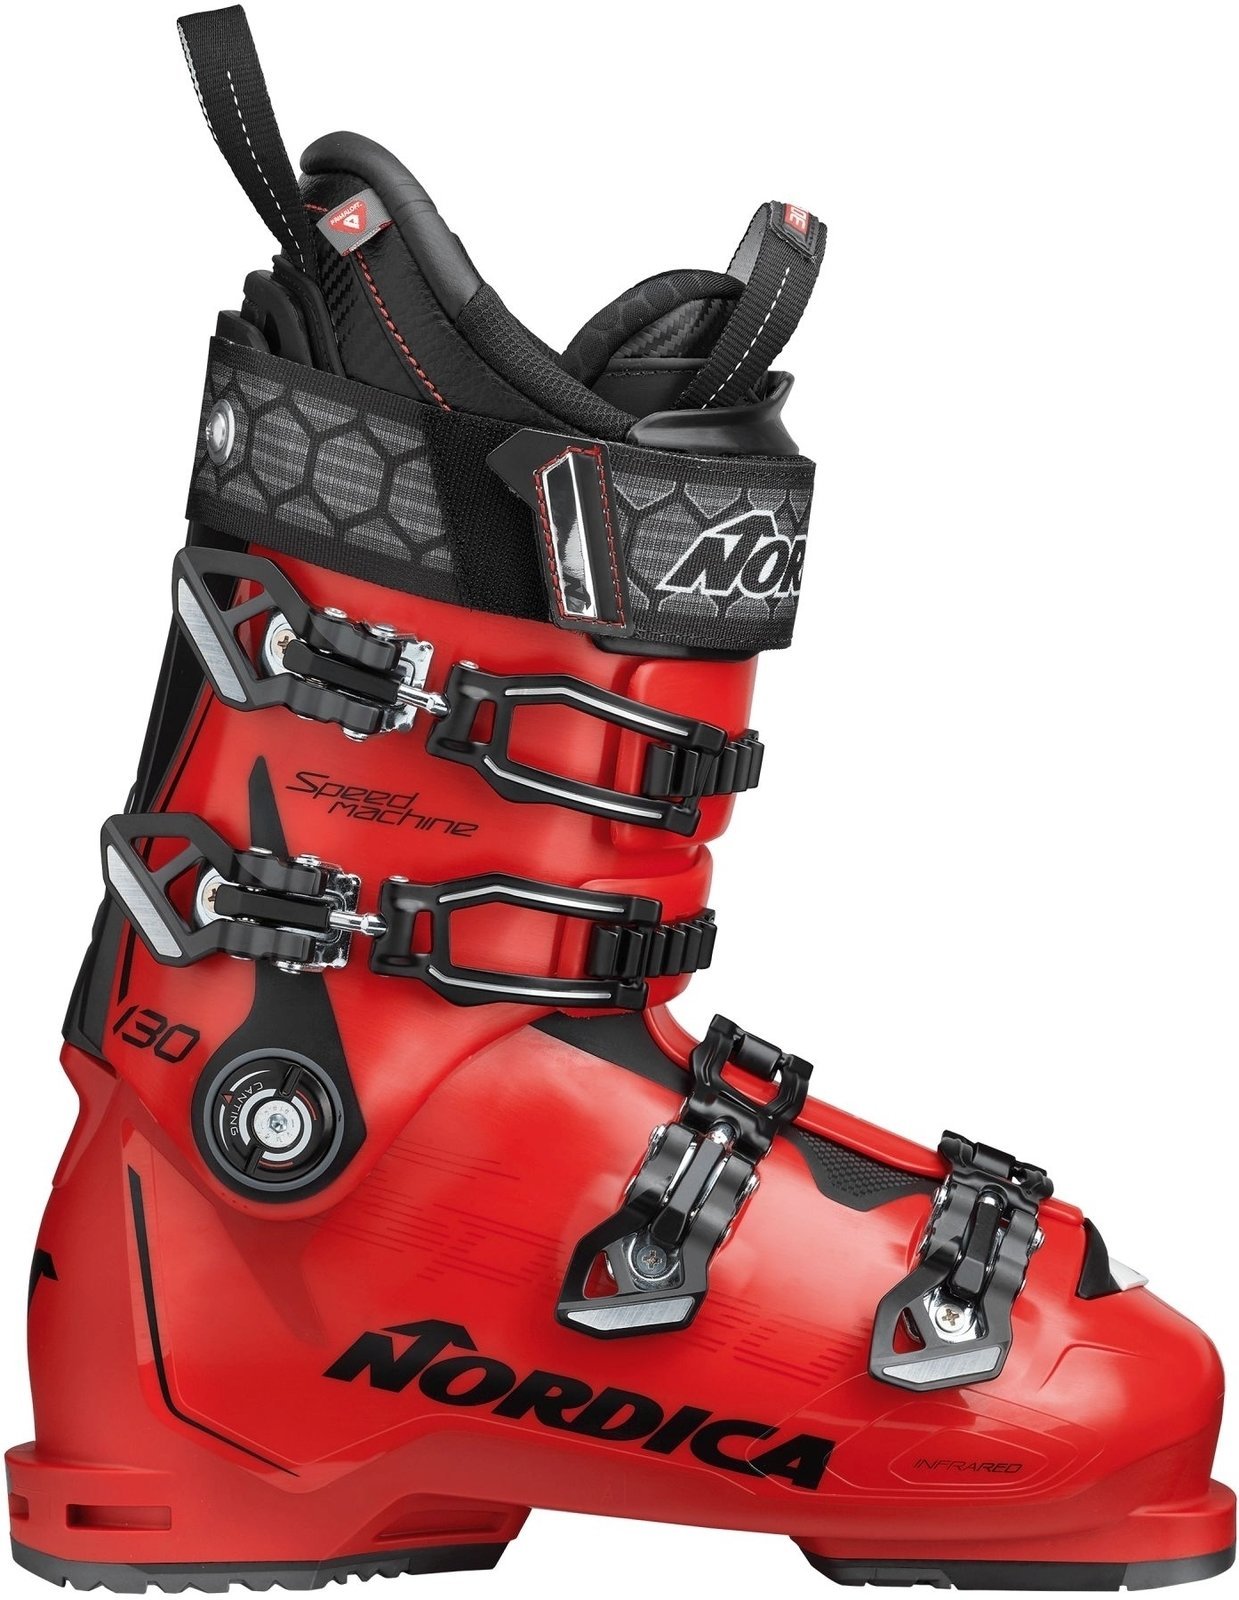 Alpin-Skischuhe Nordica Speedmachine Rot-Schwarz 280 Alpin-Skischuhe